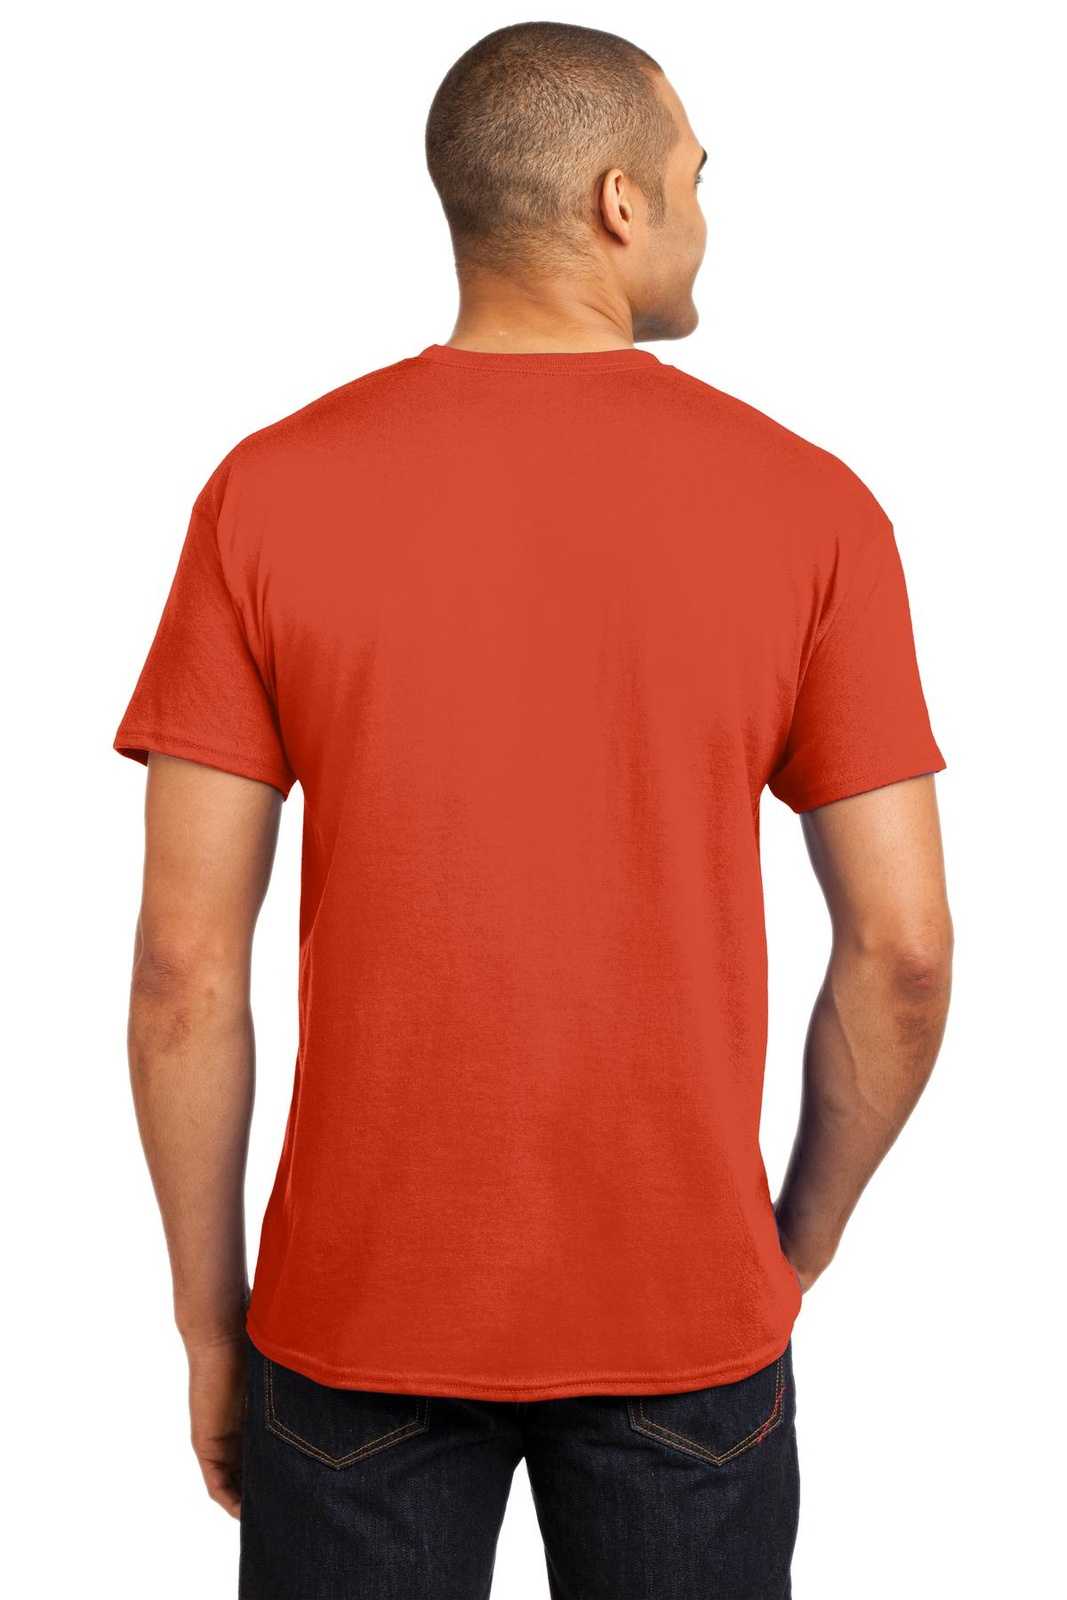 Hanes 5170 Ecosmart 50/50 Cotton/Poly T-Shirt - Orange - HIT a Double